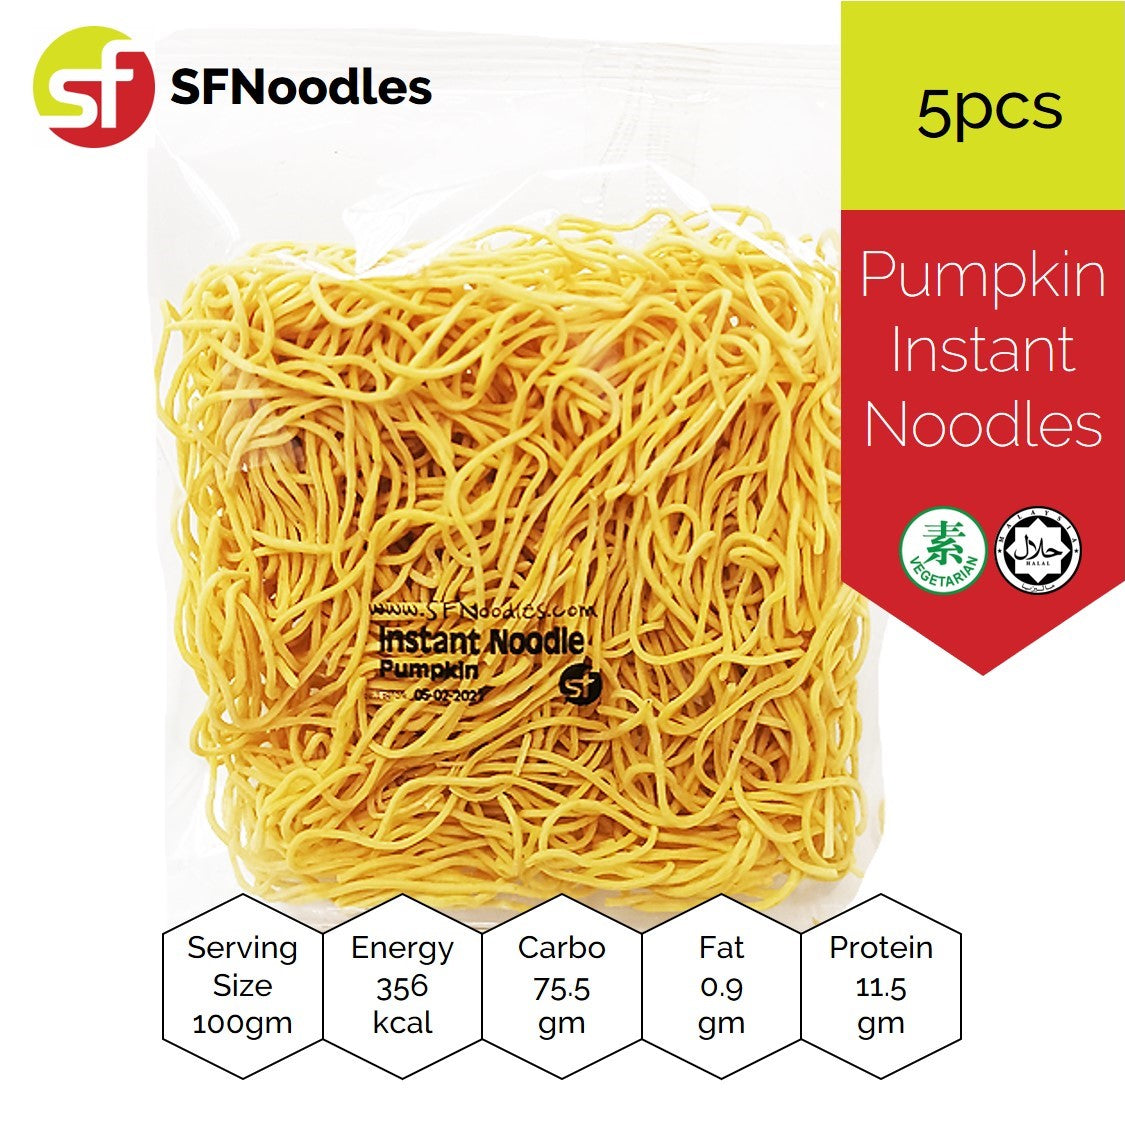 Pumpkin Air Dried Instant Noodles (健康南瓜面)